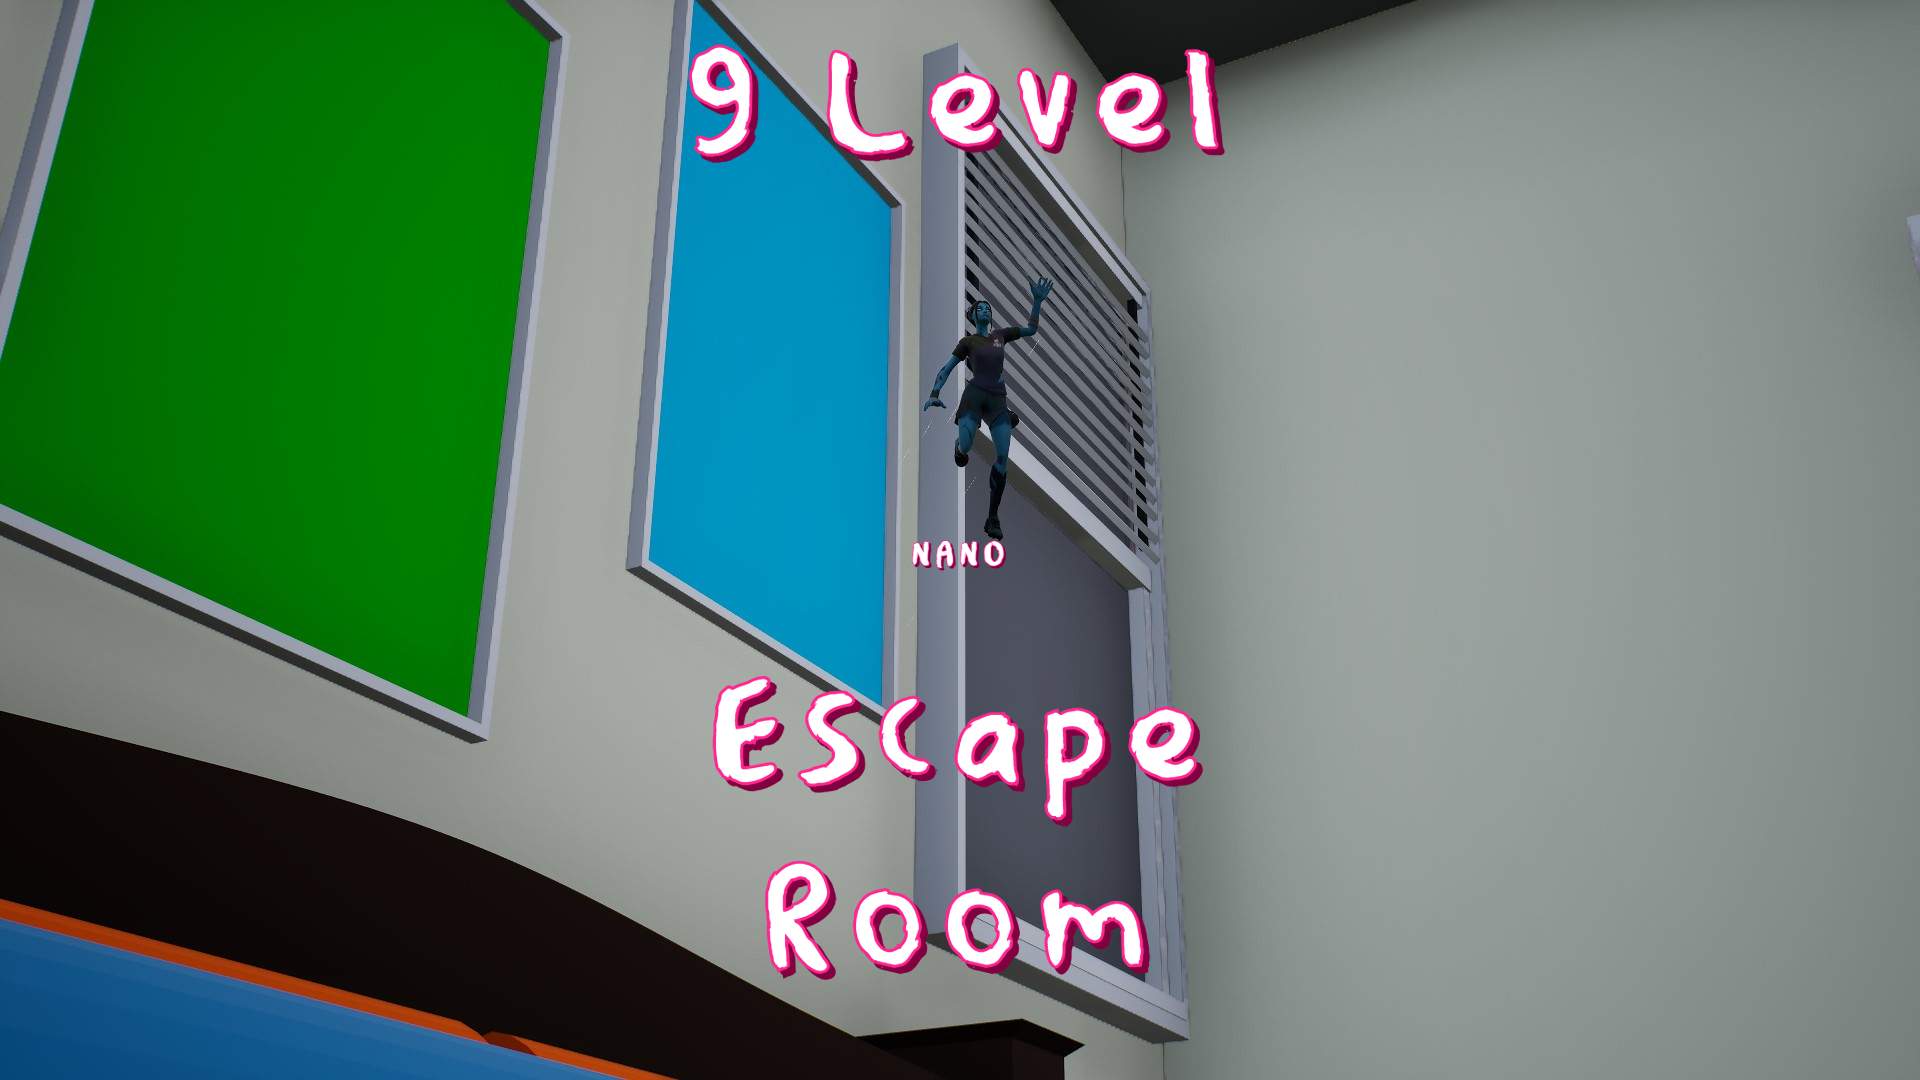 9 Level Nano Escape Room